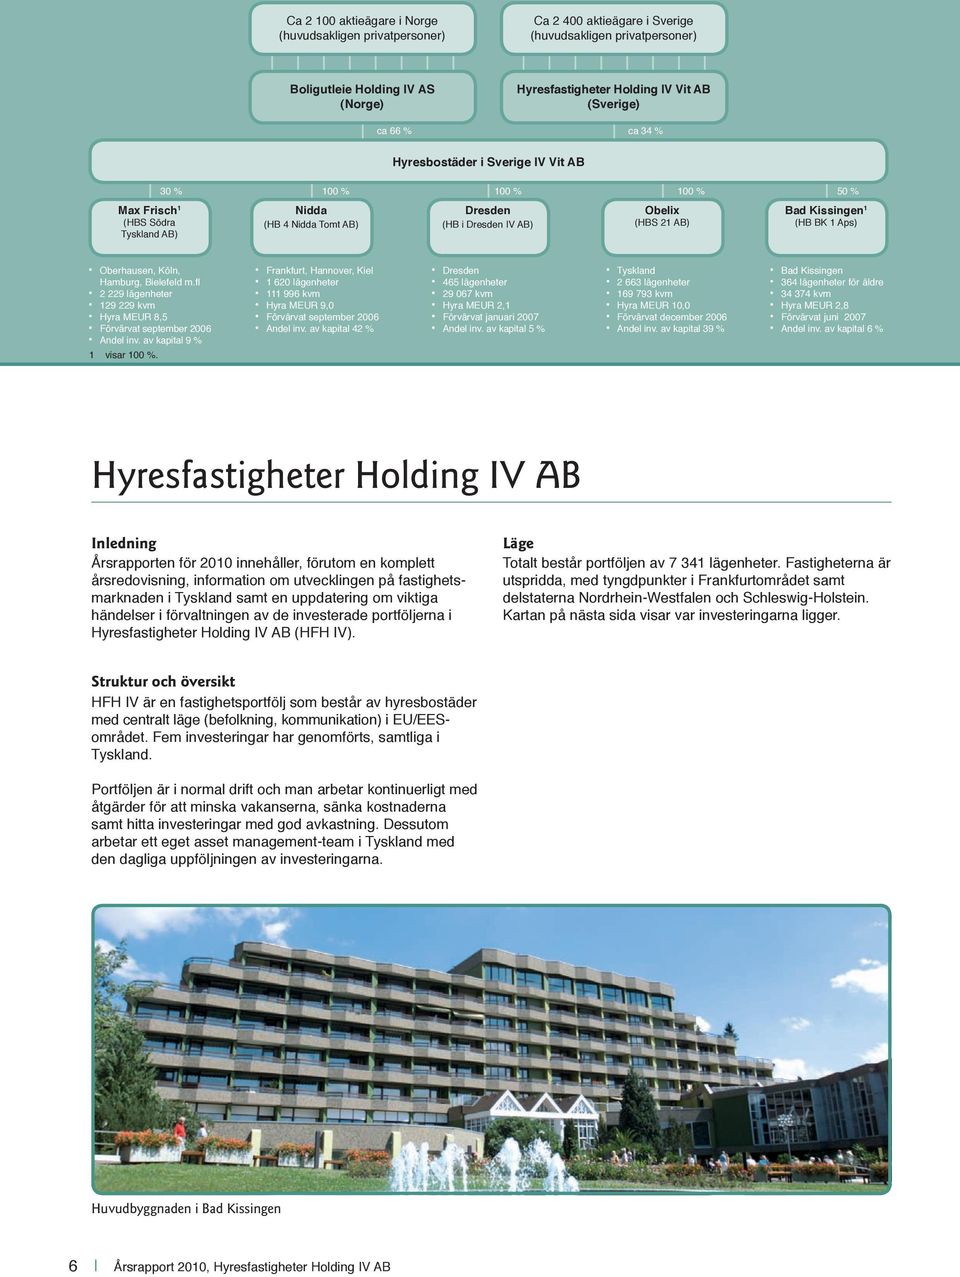 Kissingen 1 (HB BK 1 Aps) Oberhausen, Köln, Hamburg, Bielefeld m.fl 2 229 lägenheter 129 229 kvm Hyra MEUR 8,5 Förvärvat september 2006 Andel inv. av kapital 9 % 1 visar 100 %.